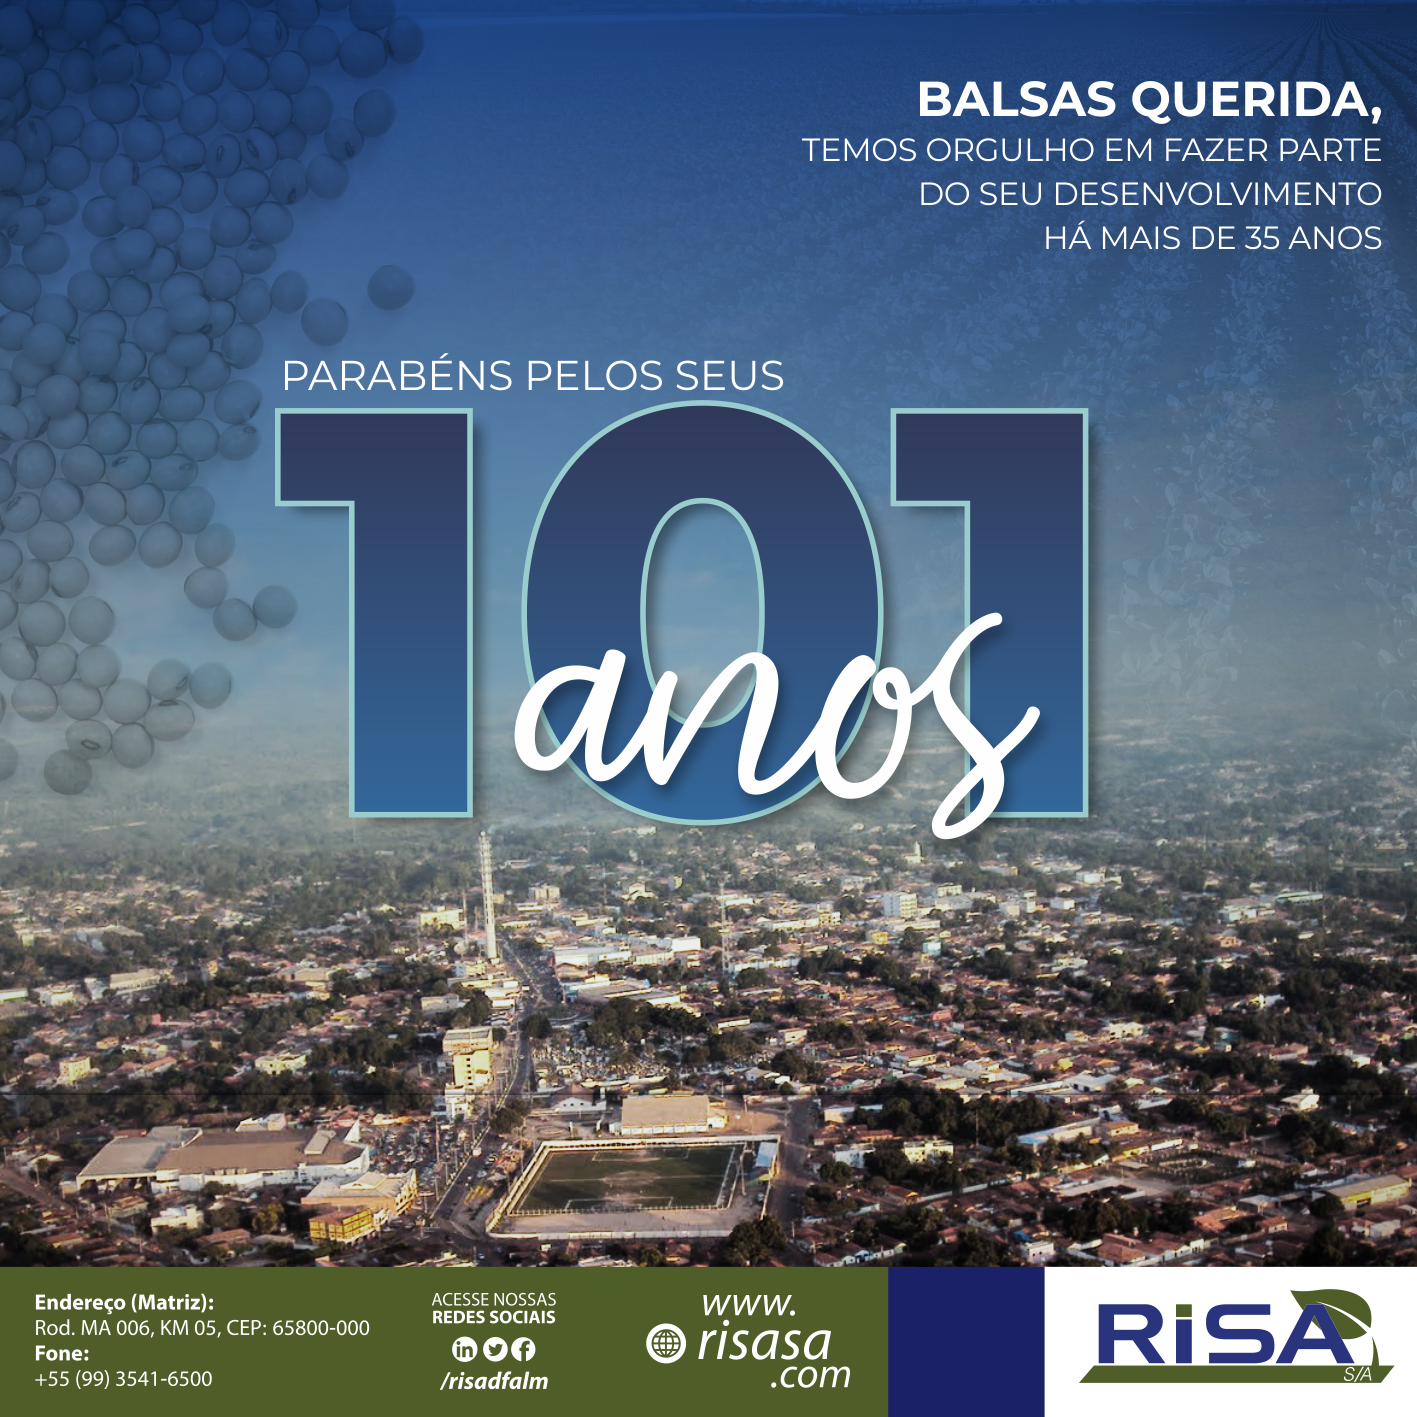 Balsas 101 anos, a Risa tem orgulho em contribuir com o desenvolvimento há mais de 35 anos.